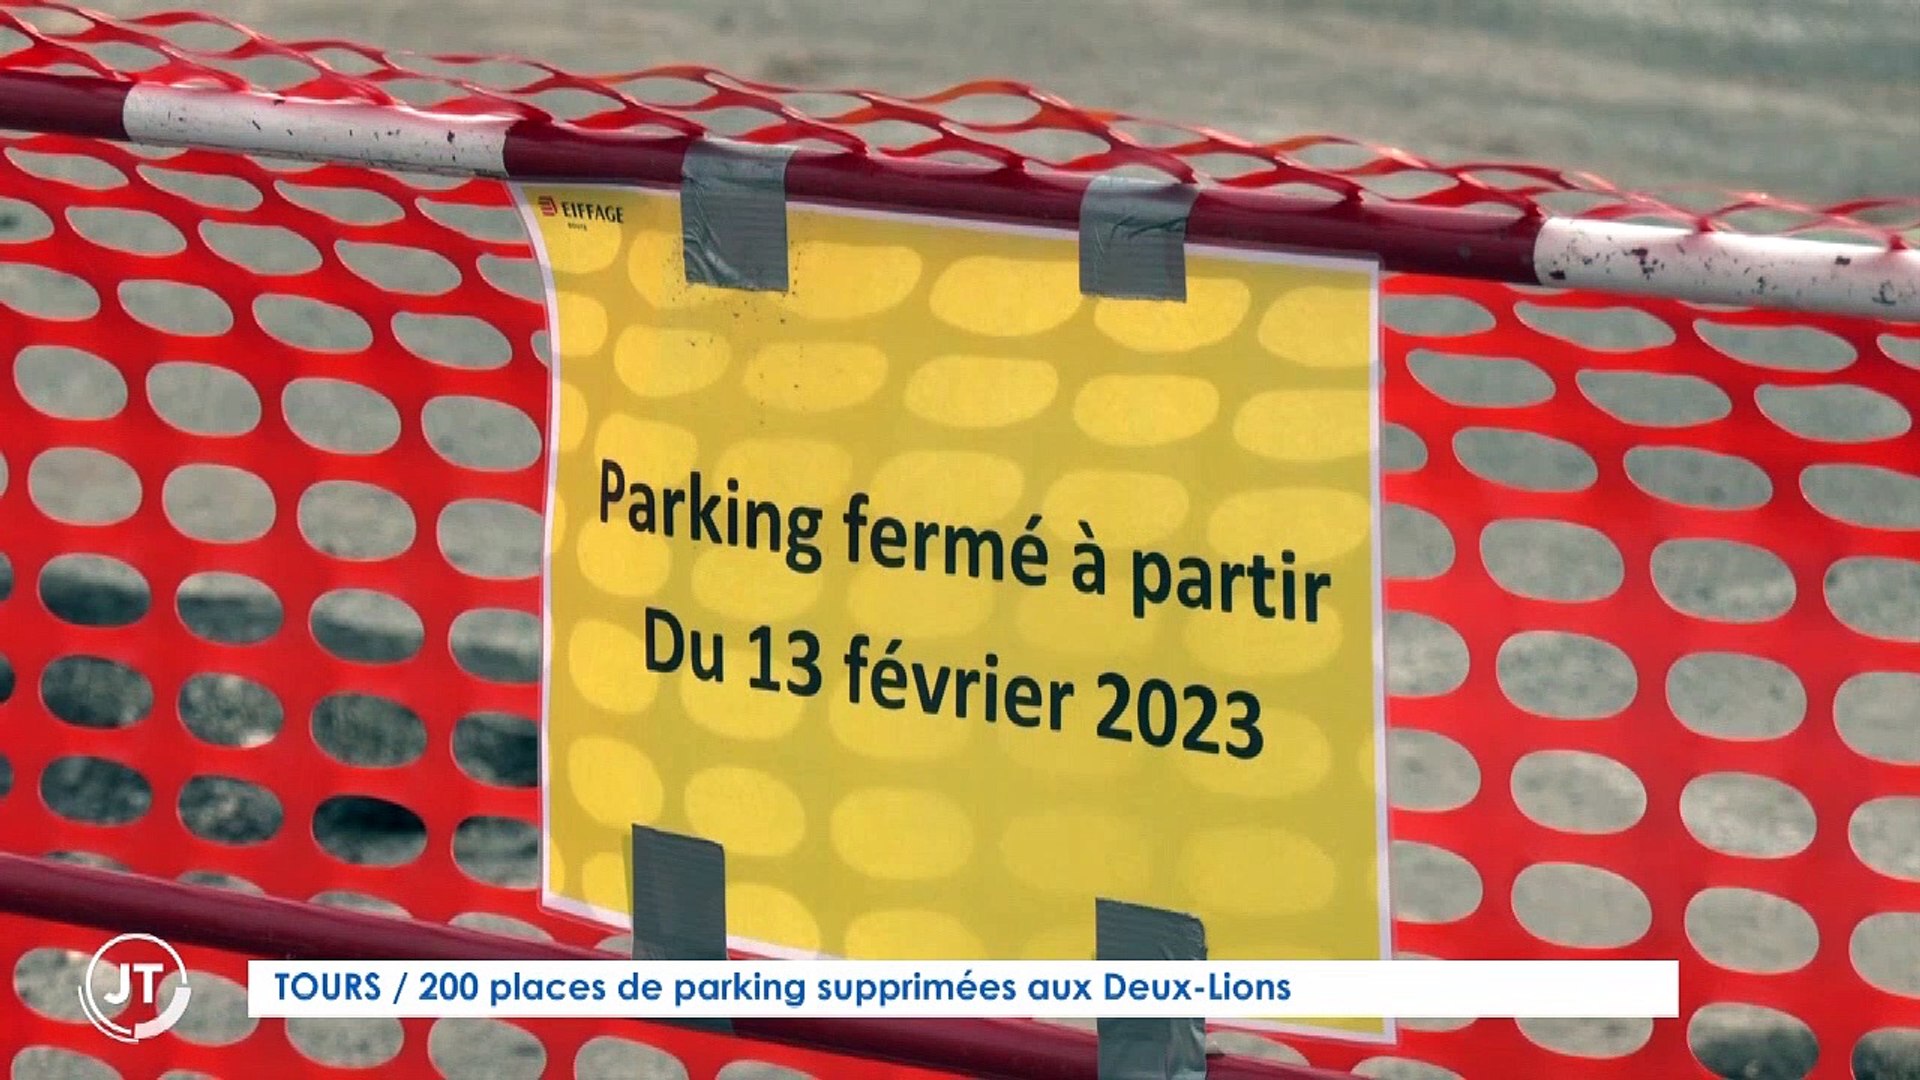 TOURS / 200 places de parking supprimées aux Deux-Lions - Vidéo Dailymotion